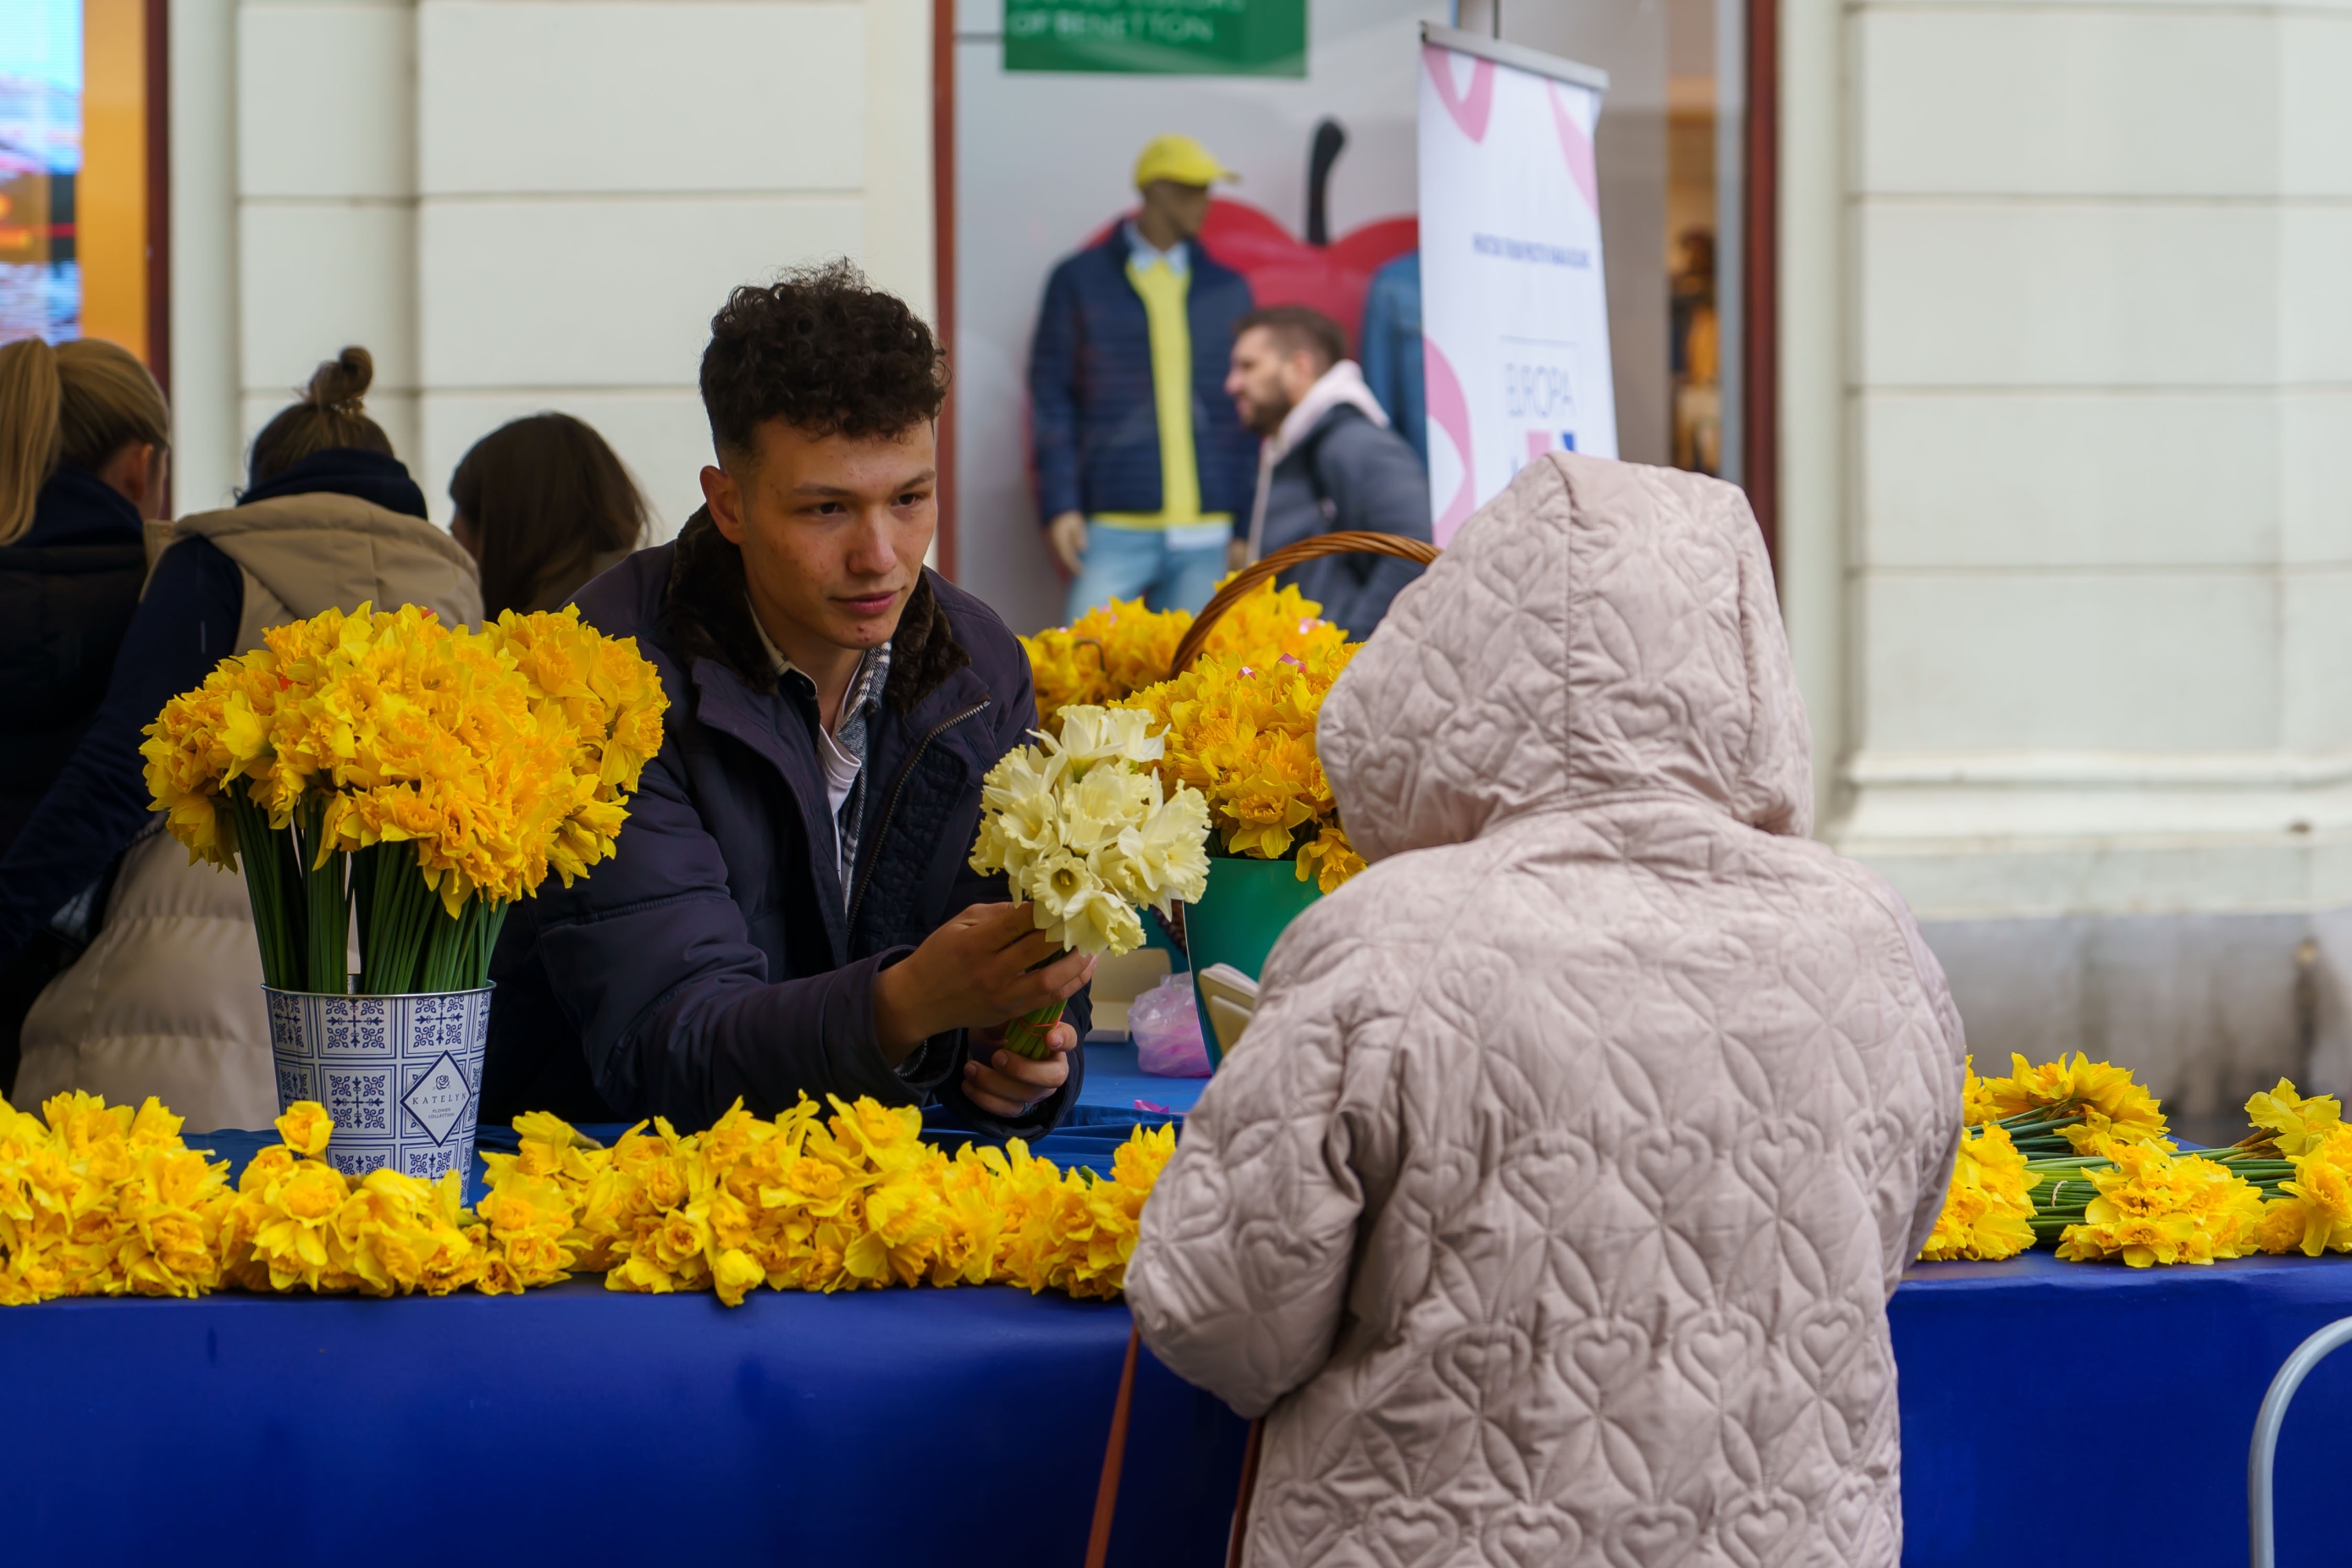 Obilježen je 27. Dan narcisa na Cvjetnom trgu u Zagrebu